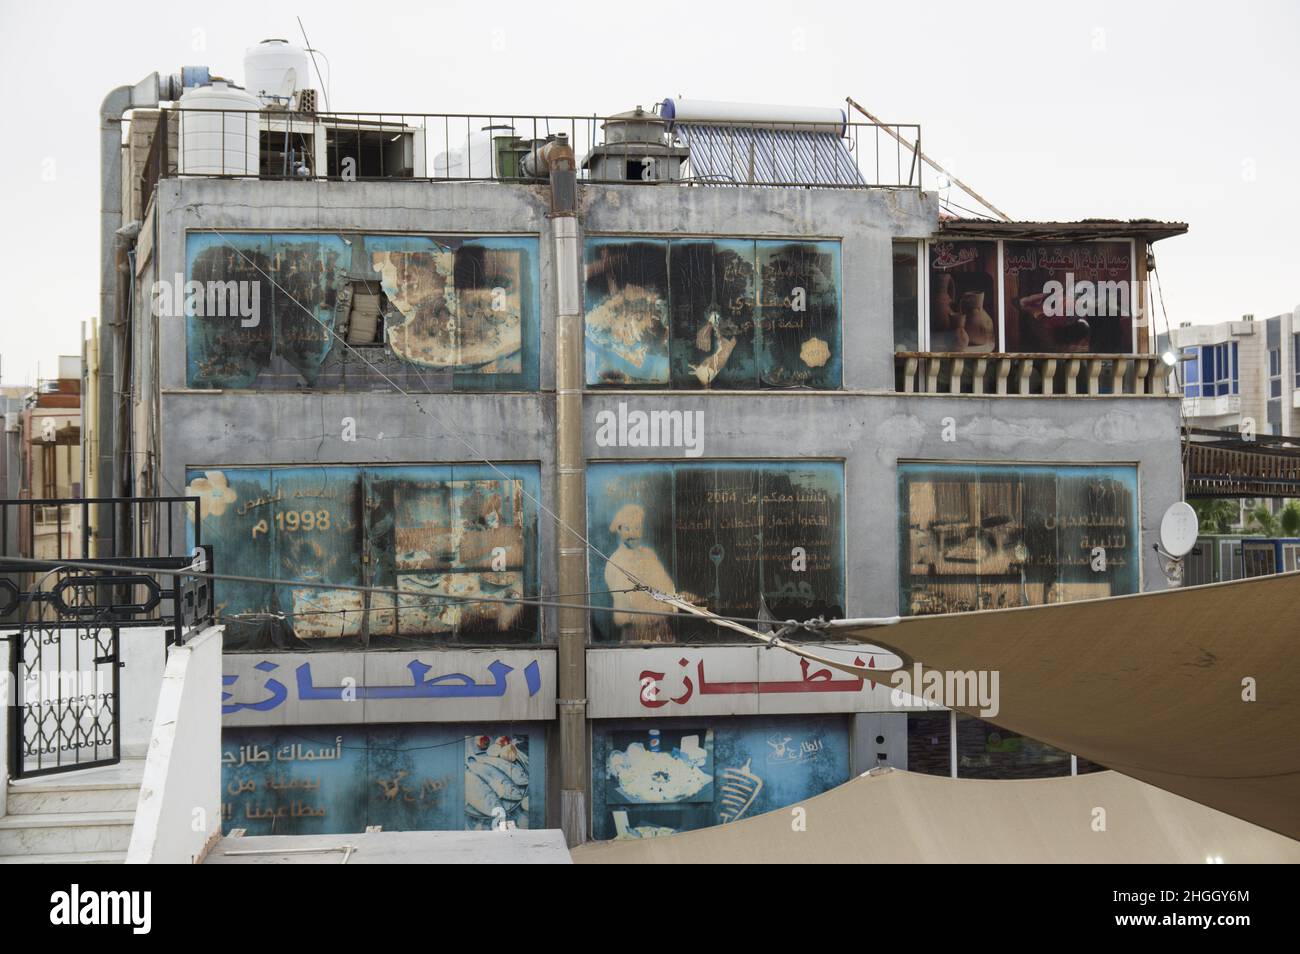 Verblasste und windgepeitschte Werbetafeln an einem Gebäude in Aqaba Jordanien, auf denen die Brotherstellung und ein Restaurant sowie arabische Schriftschnänge und zerrissene Markisen abgebildet sind. Stockfoto